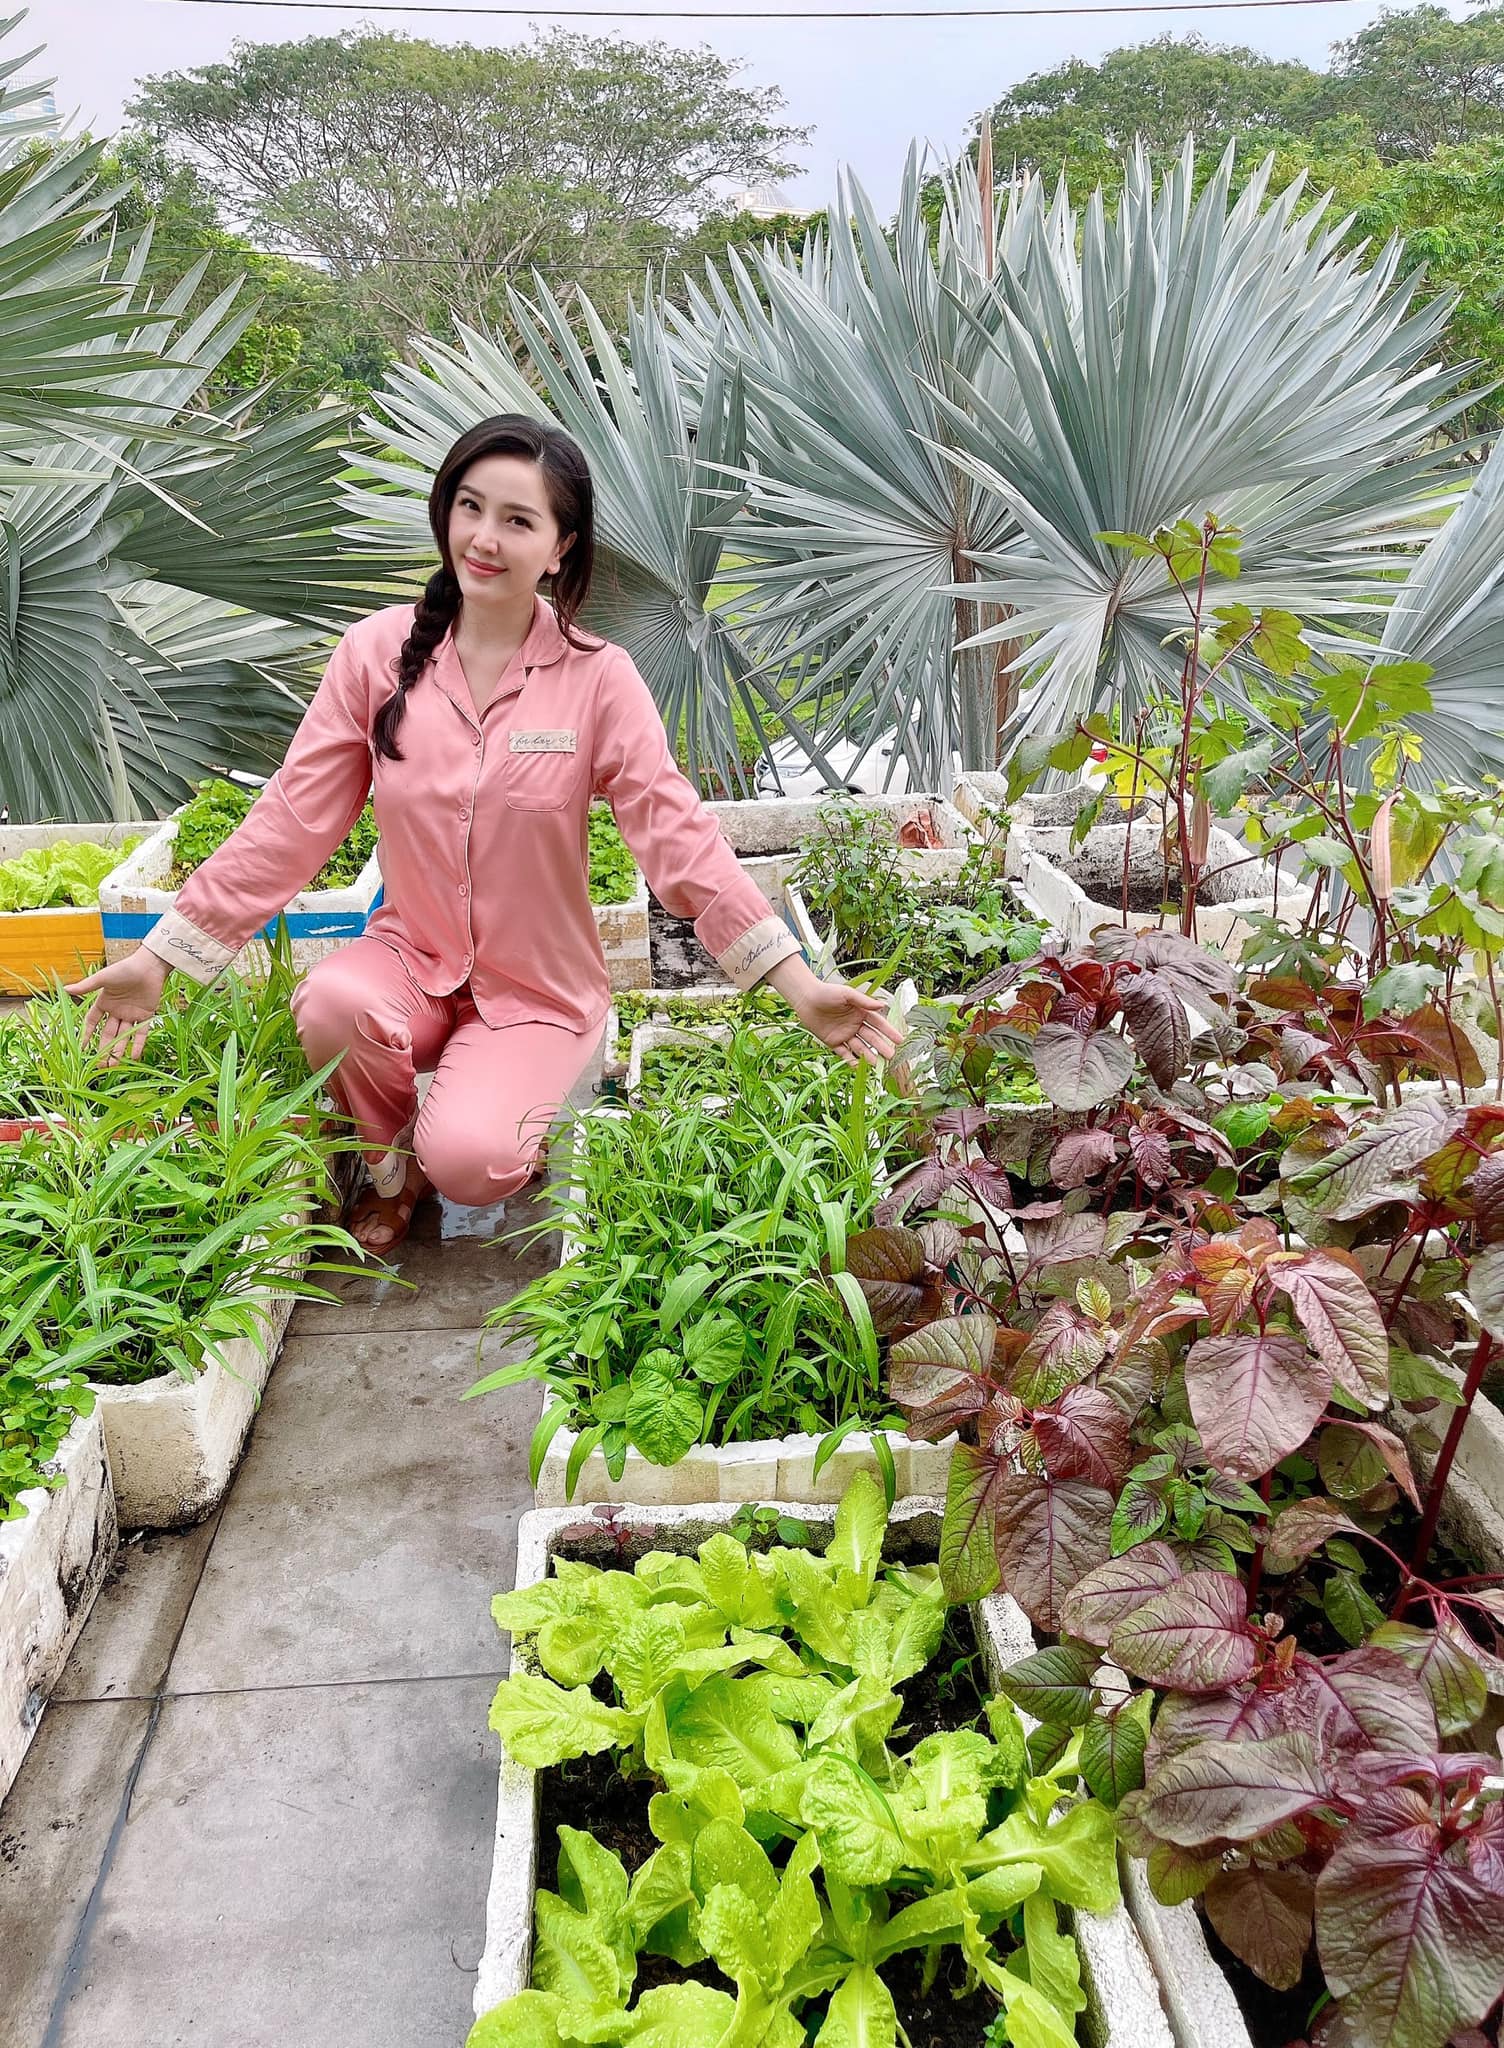 Cách Bảo Thy 'chill' bên trong biệt thự hào môn: Chán du lịch 'chanh sả' thì về trồng rau, diện dép lê gần 16 triệu thăm vườn - Ảnh 1.